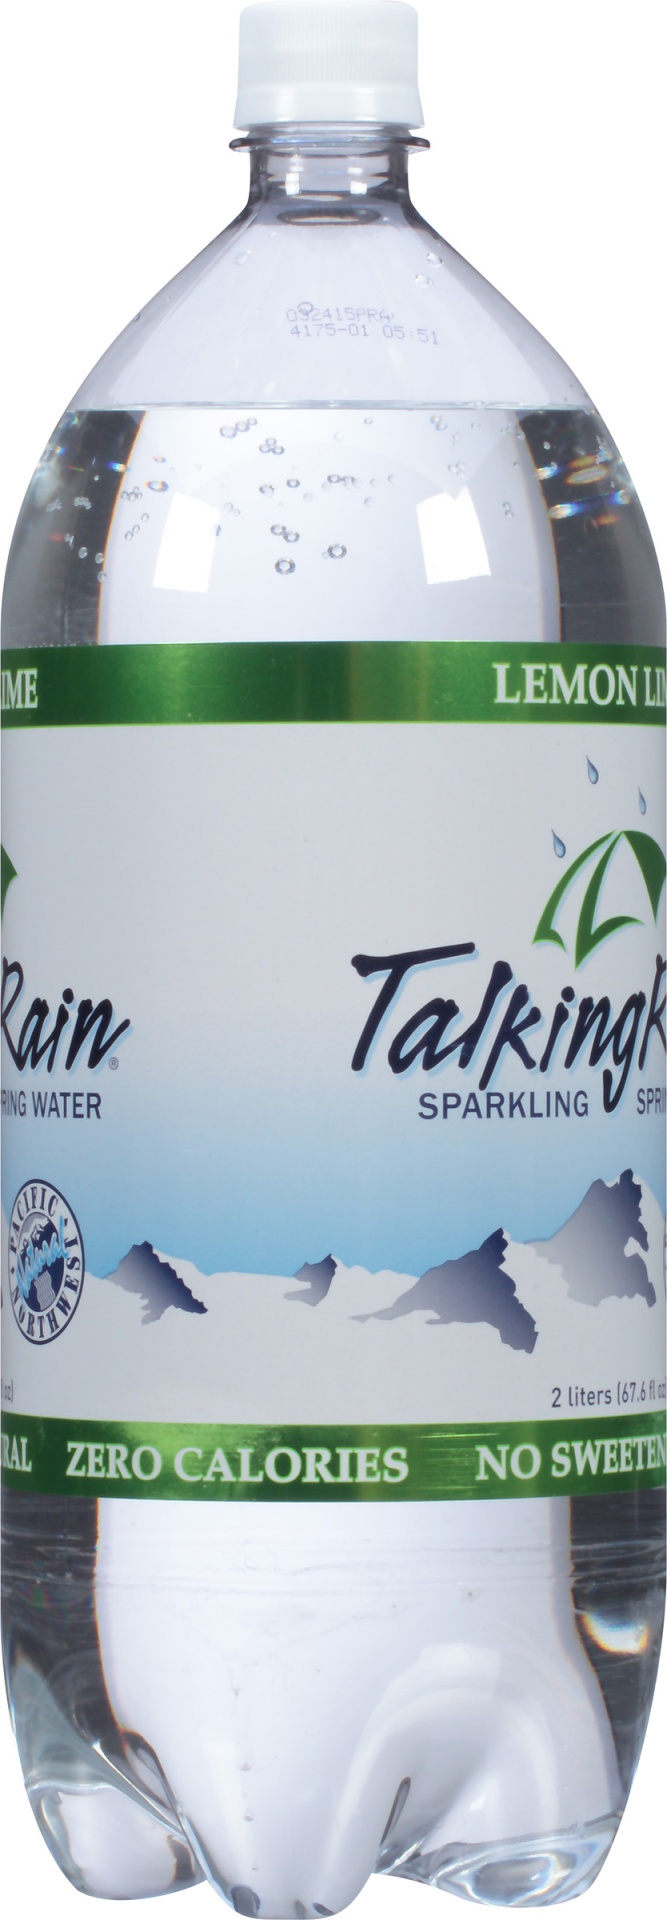 slide 3 of 6, Talking Rain Lemon-Lime Sparkling Water, 2 liter